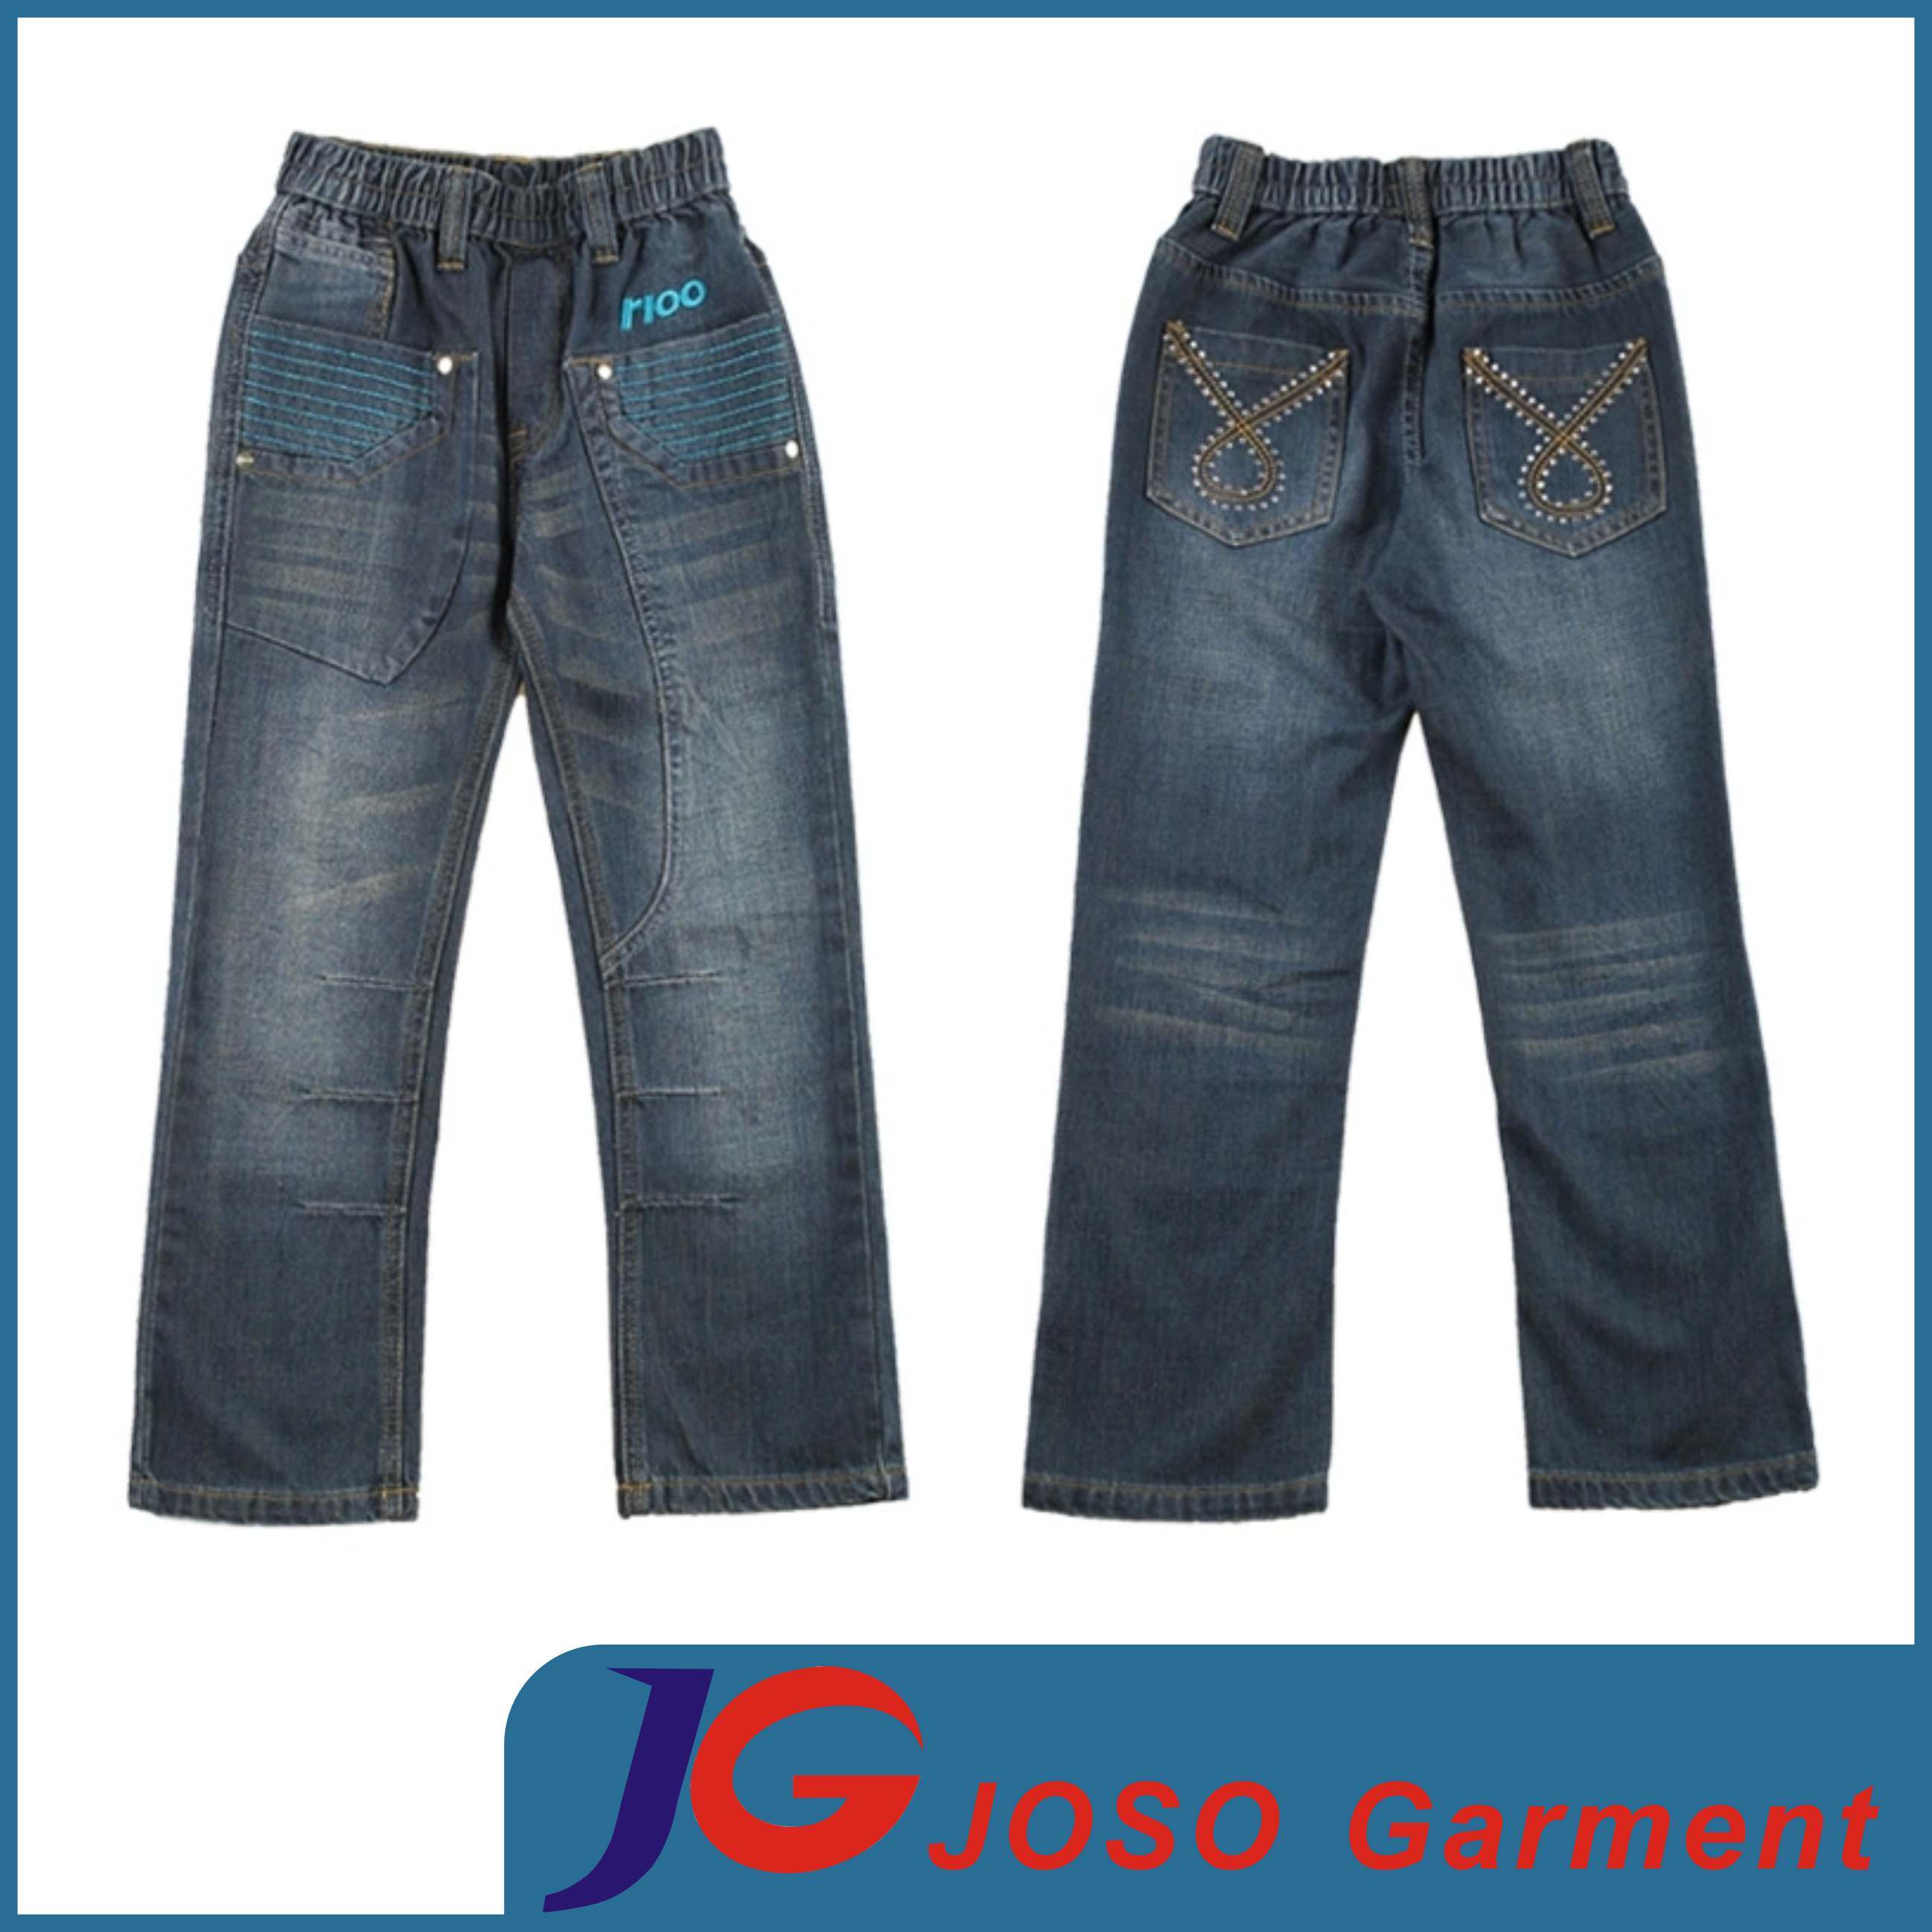 Kids Children Denim Jeans Wears (JC5156)